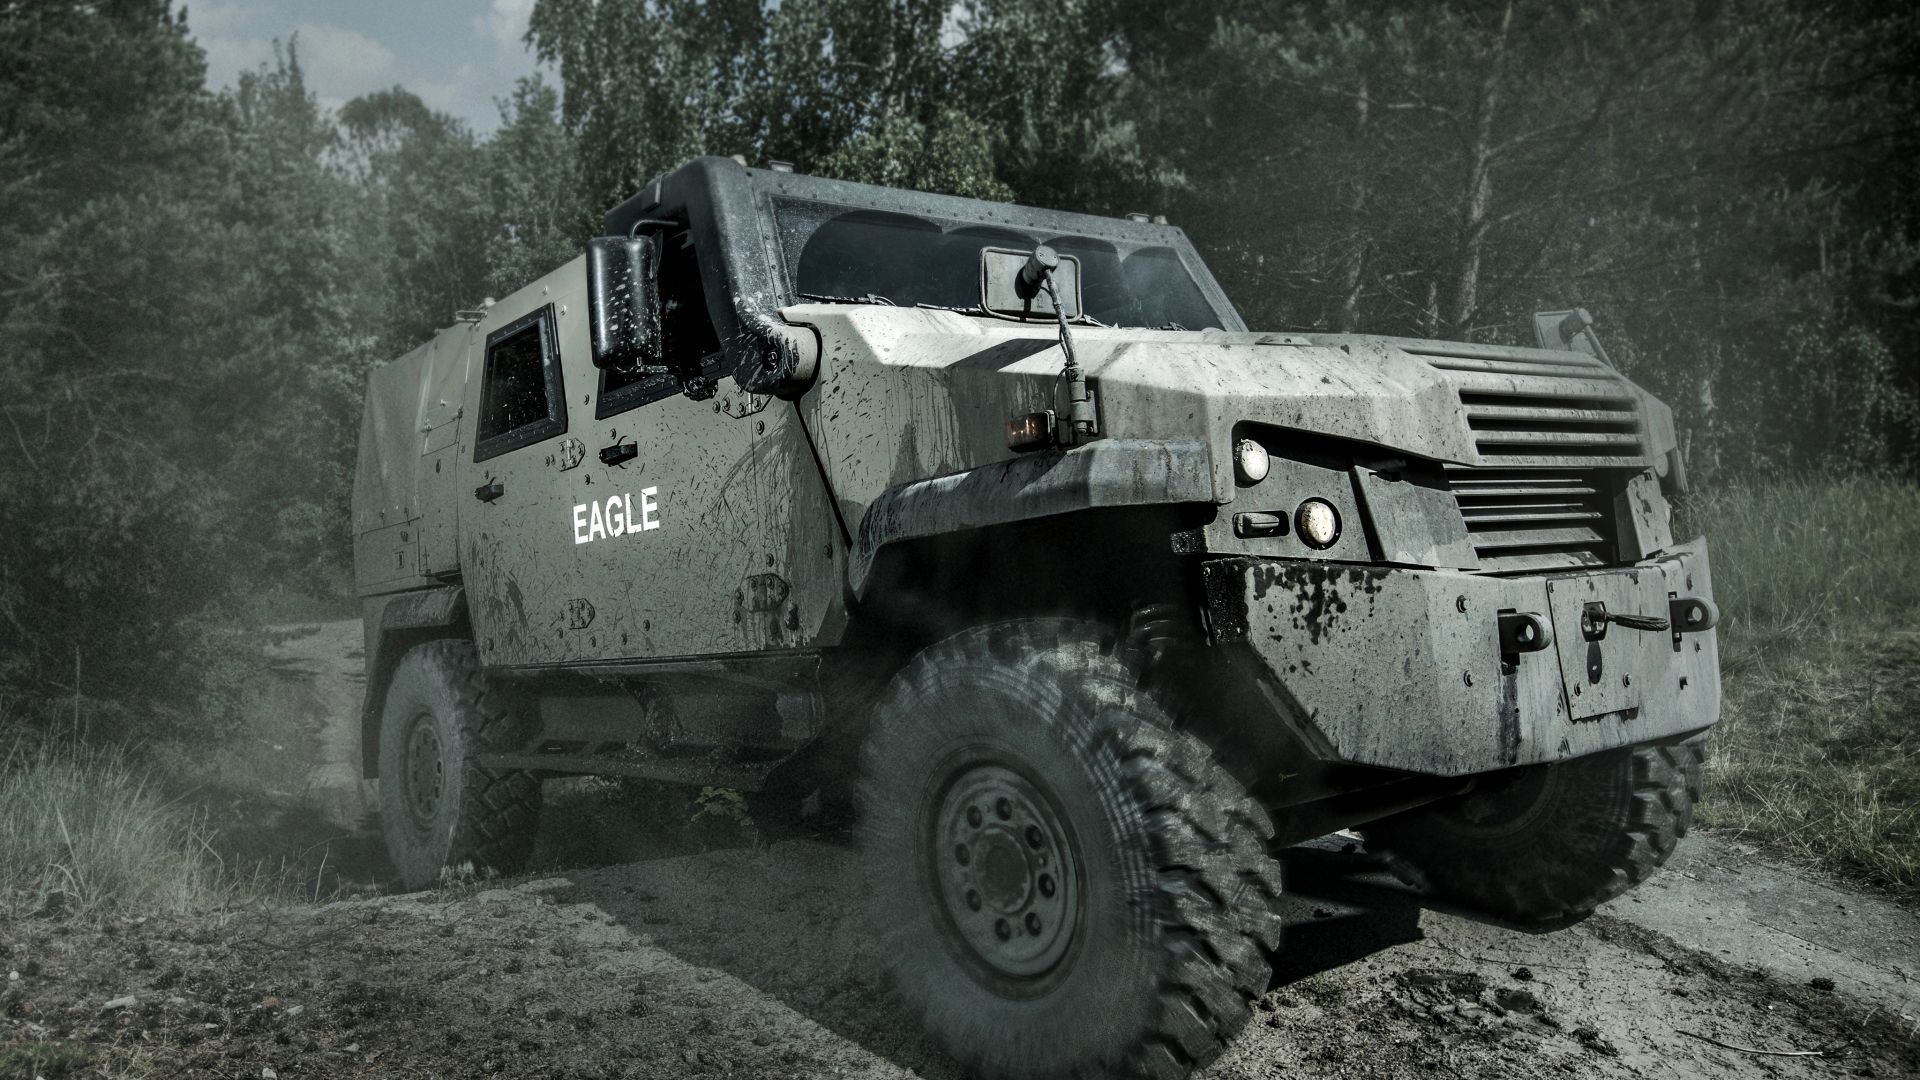 MOWAG Eagle, бронеавтомобиль-вседорожник, Армия Швейцарии, MOWAG Eagle, wheeled armored vehicle, Swiss Army (horizontal)